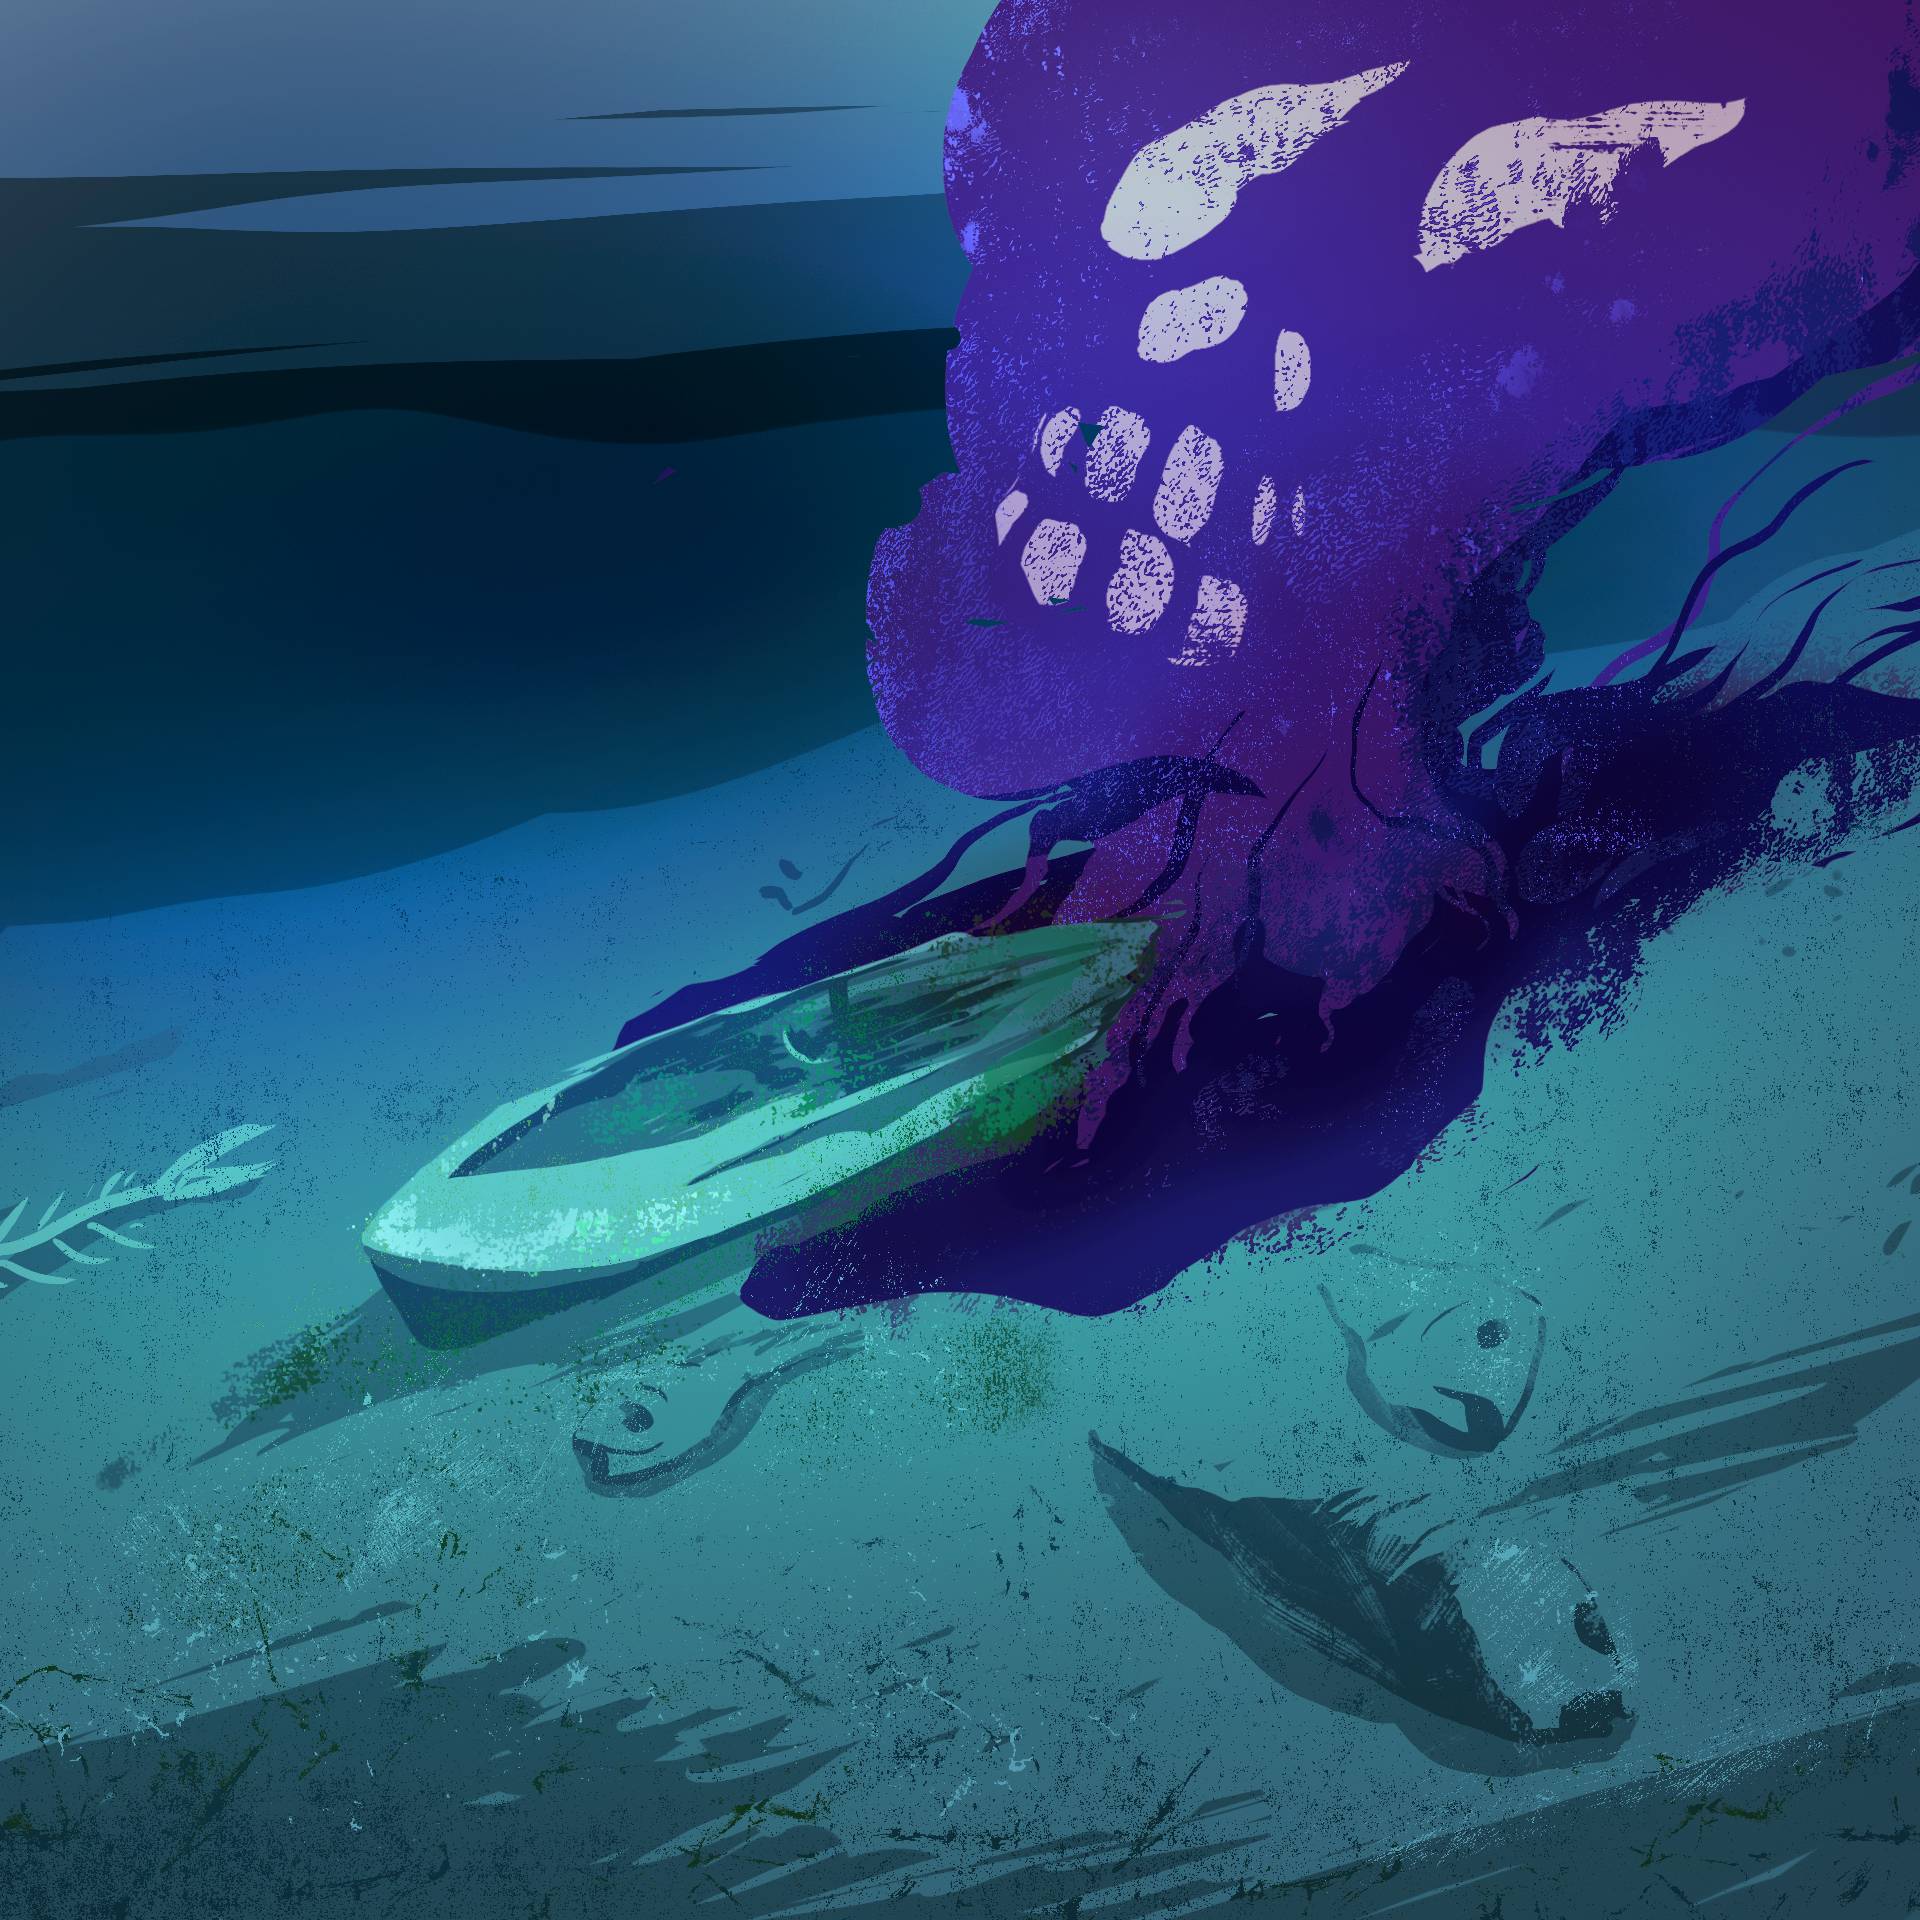 Ilustracja, przedstawiająca zanieczyszczenia, wydobywające się z wraku okrętu na dnie morza.